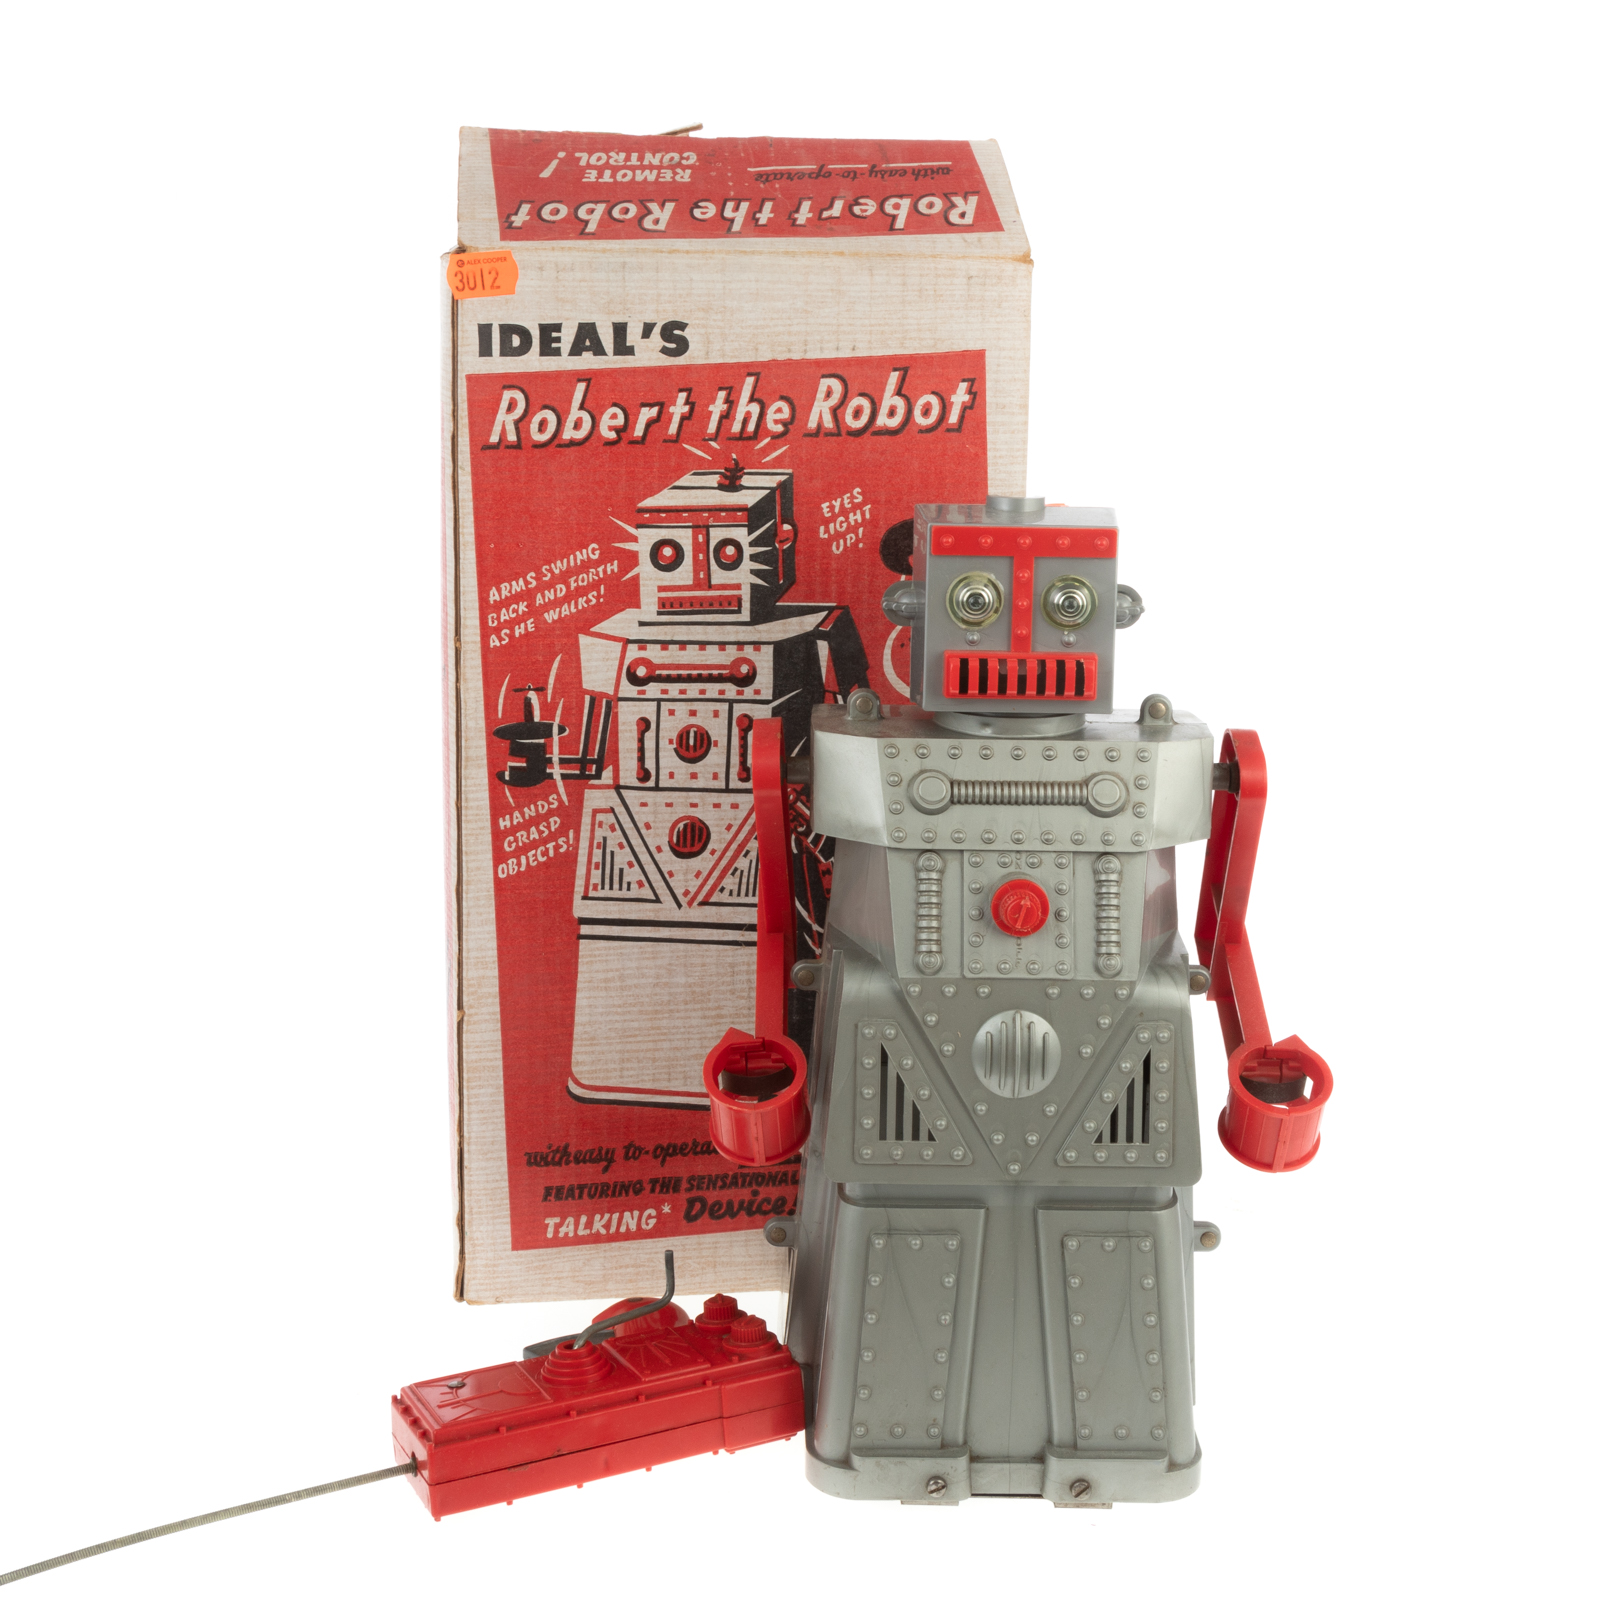 IDEAL ROBERT THE ROBOT Circa 1950s;